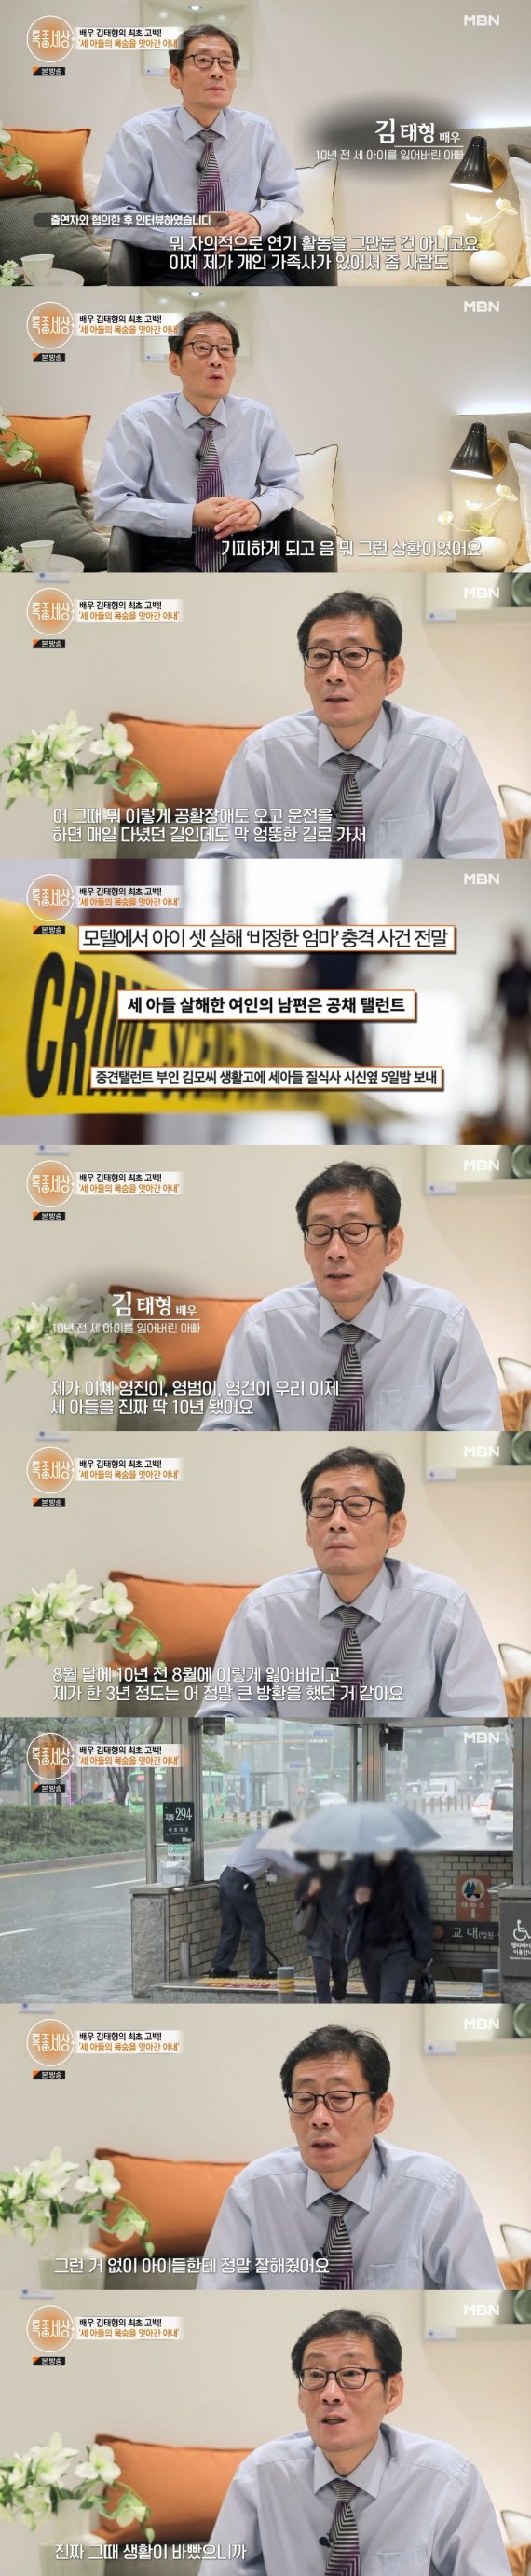 MBN '특종세상' 방송 화면 캡처